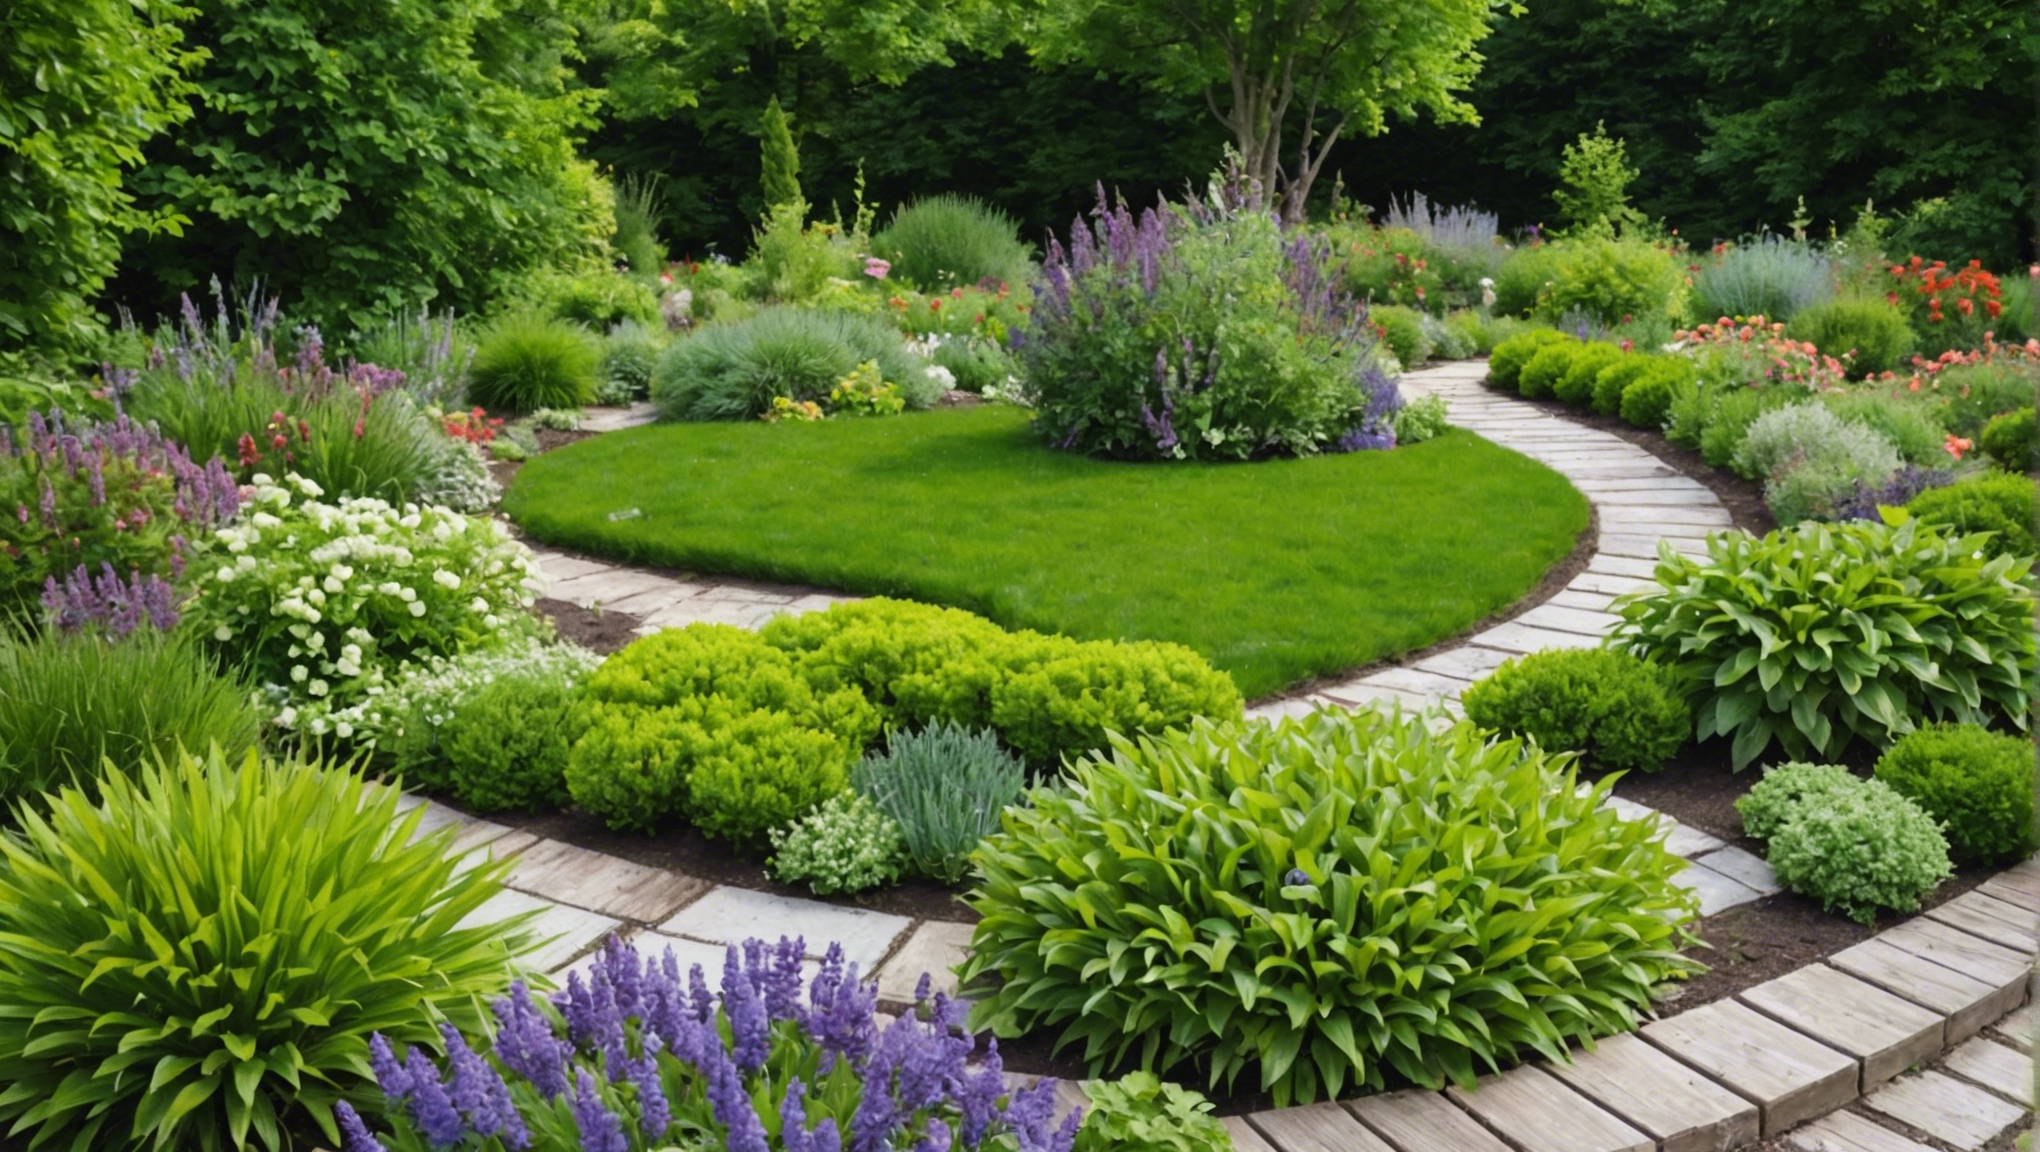 découvrez les secrets bien gardés des paysagistes pour aménager des jardins à couper le souffle et transformer votre espace extérieur.